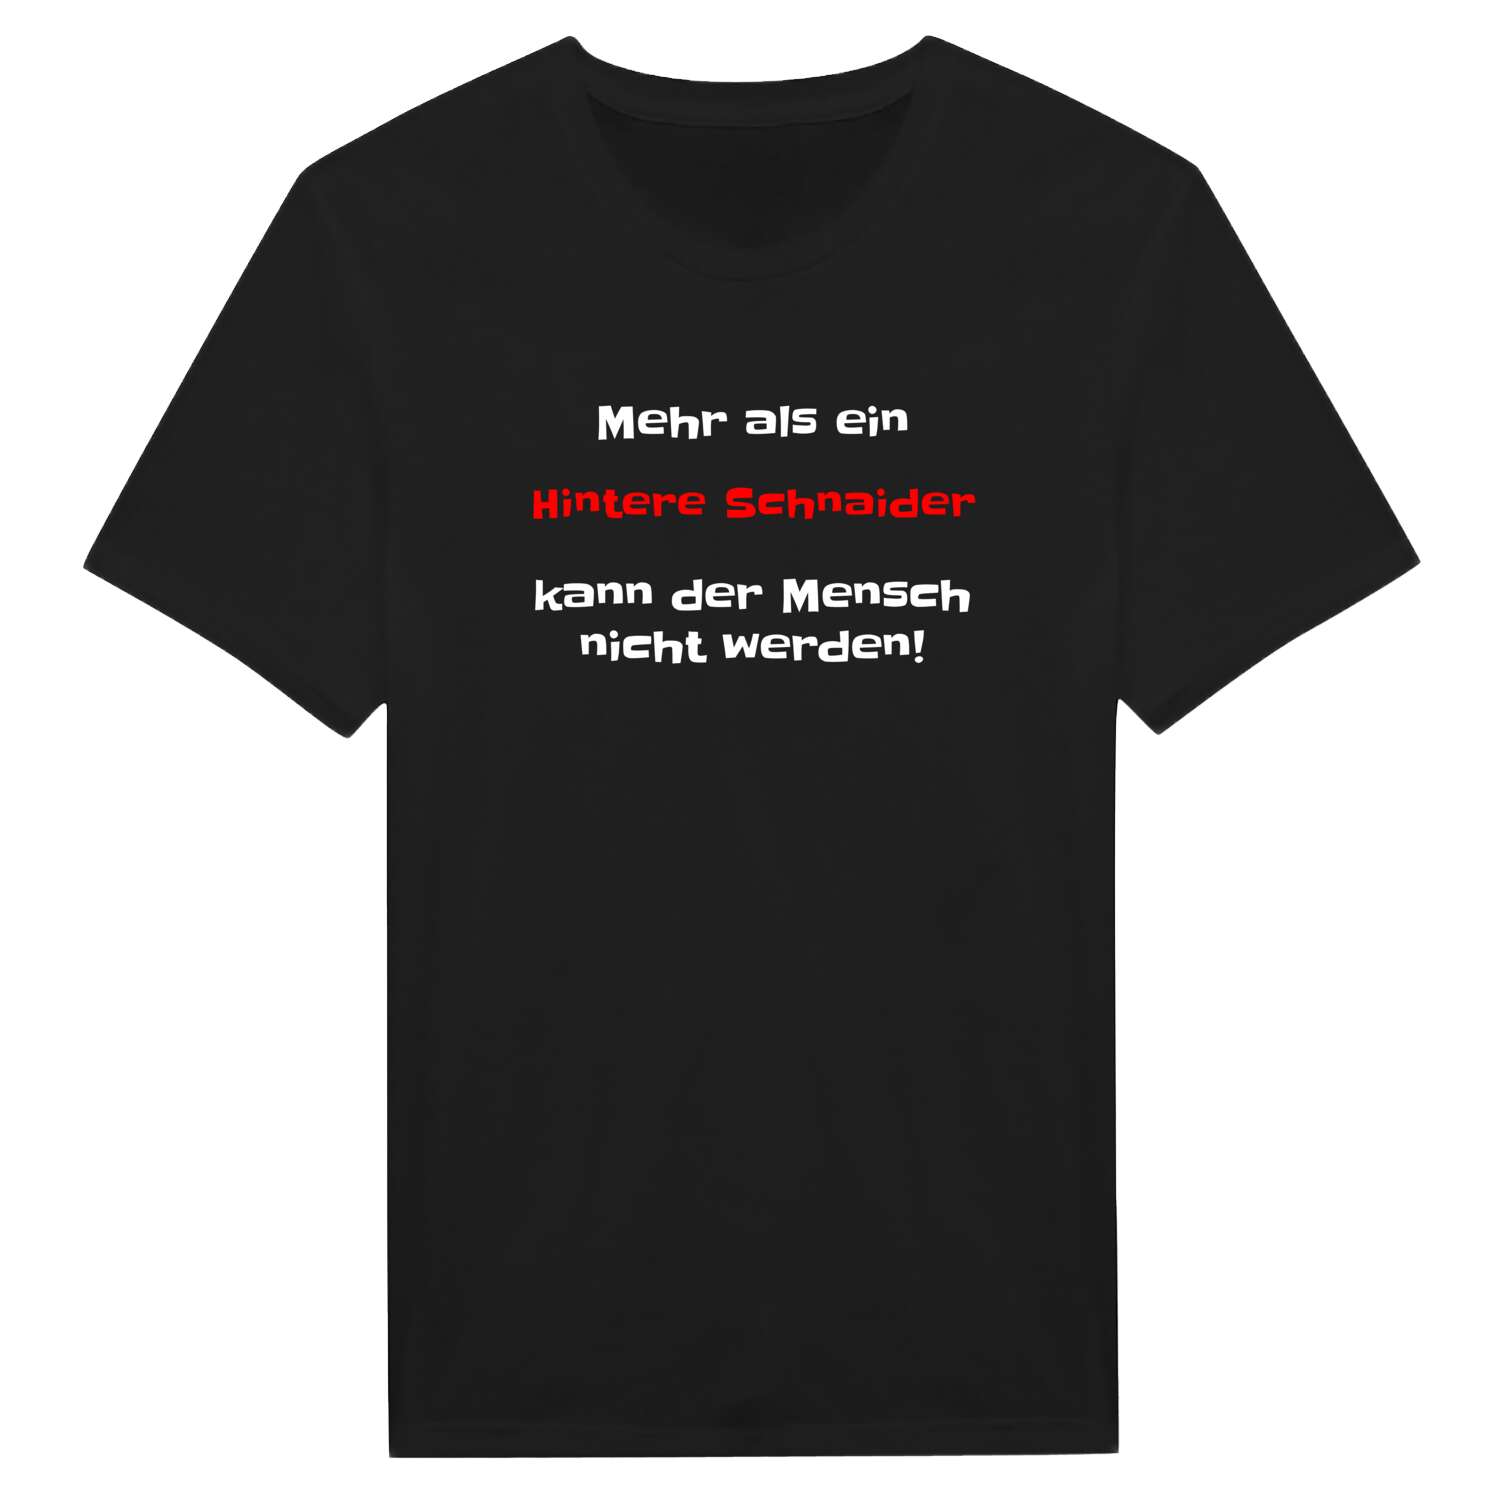 Hintere Schnaid T-Shirt »Mehr als ein«